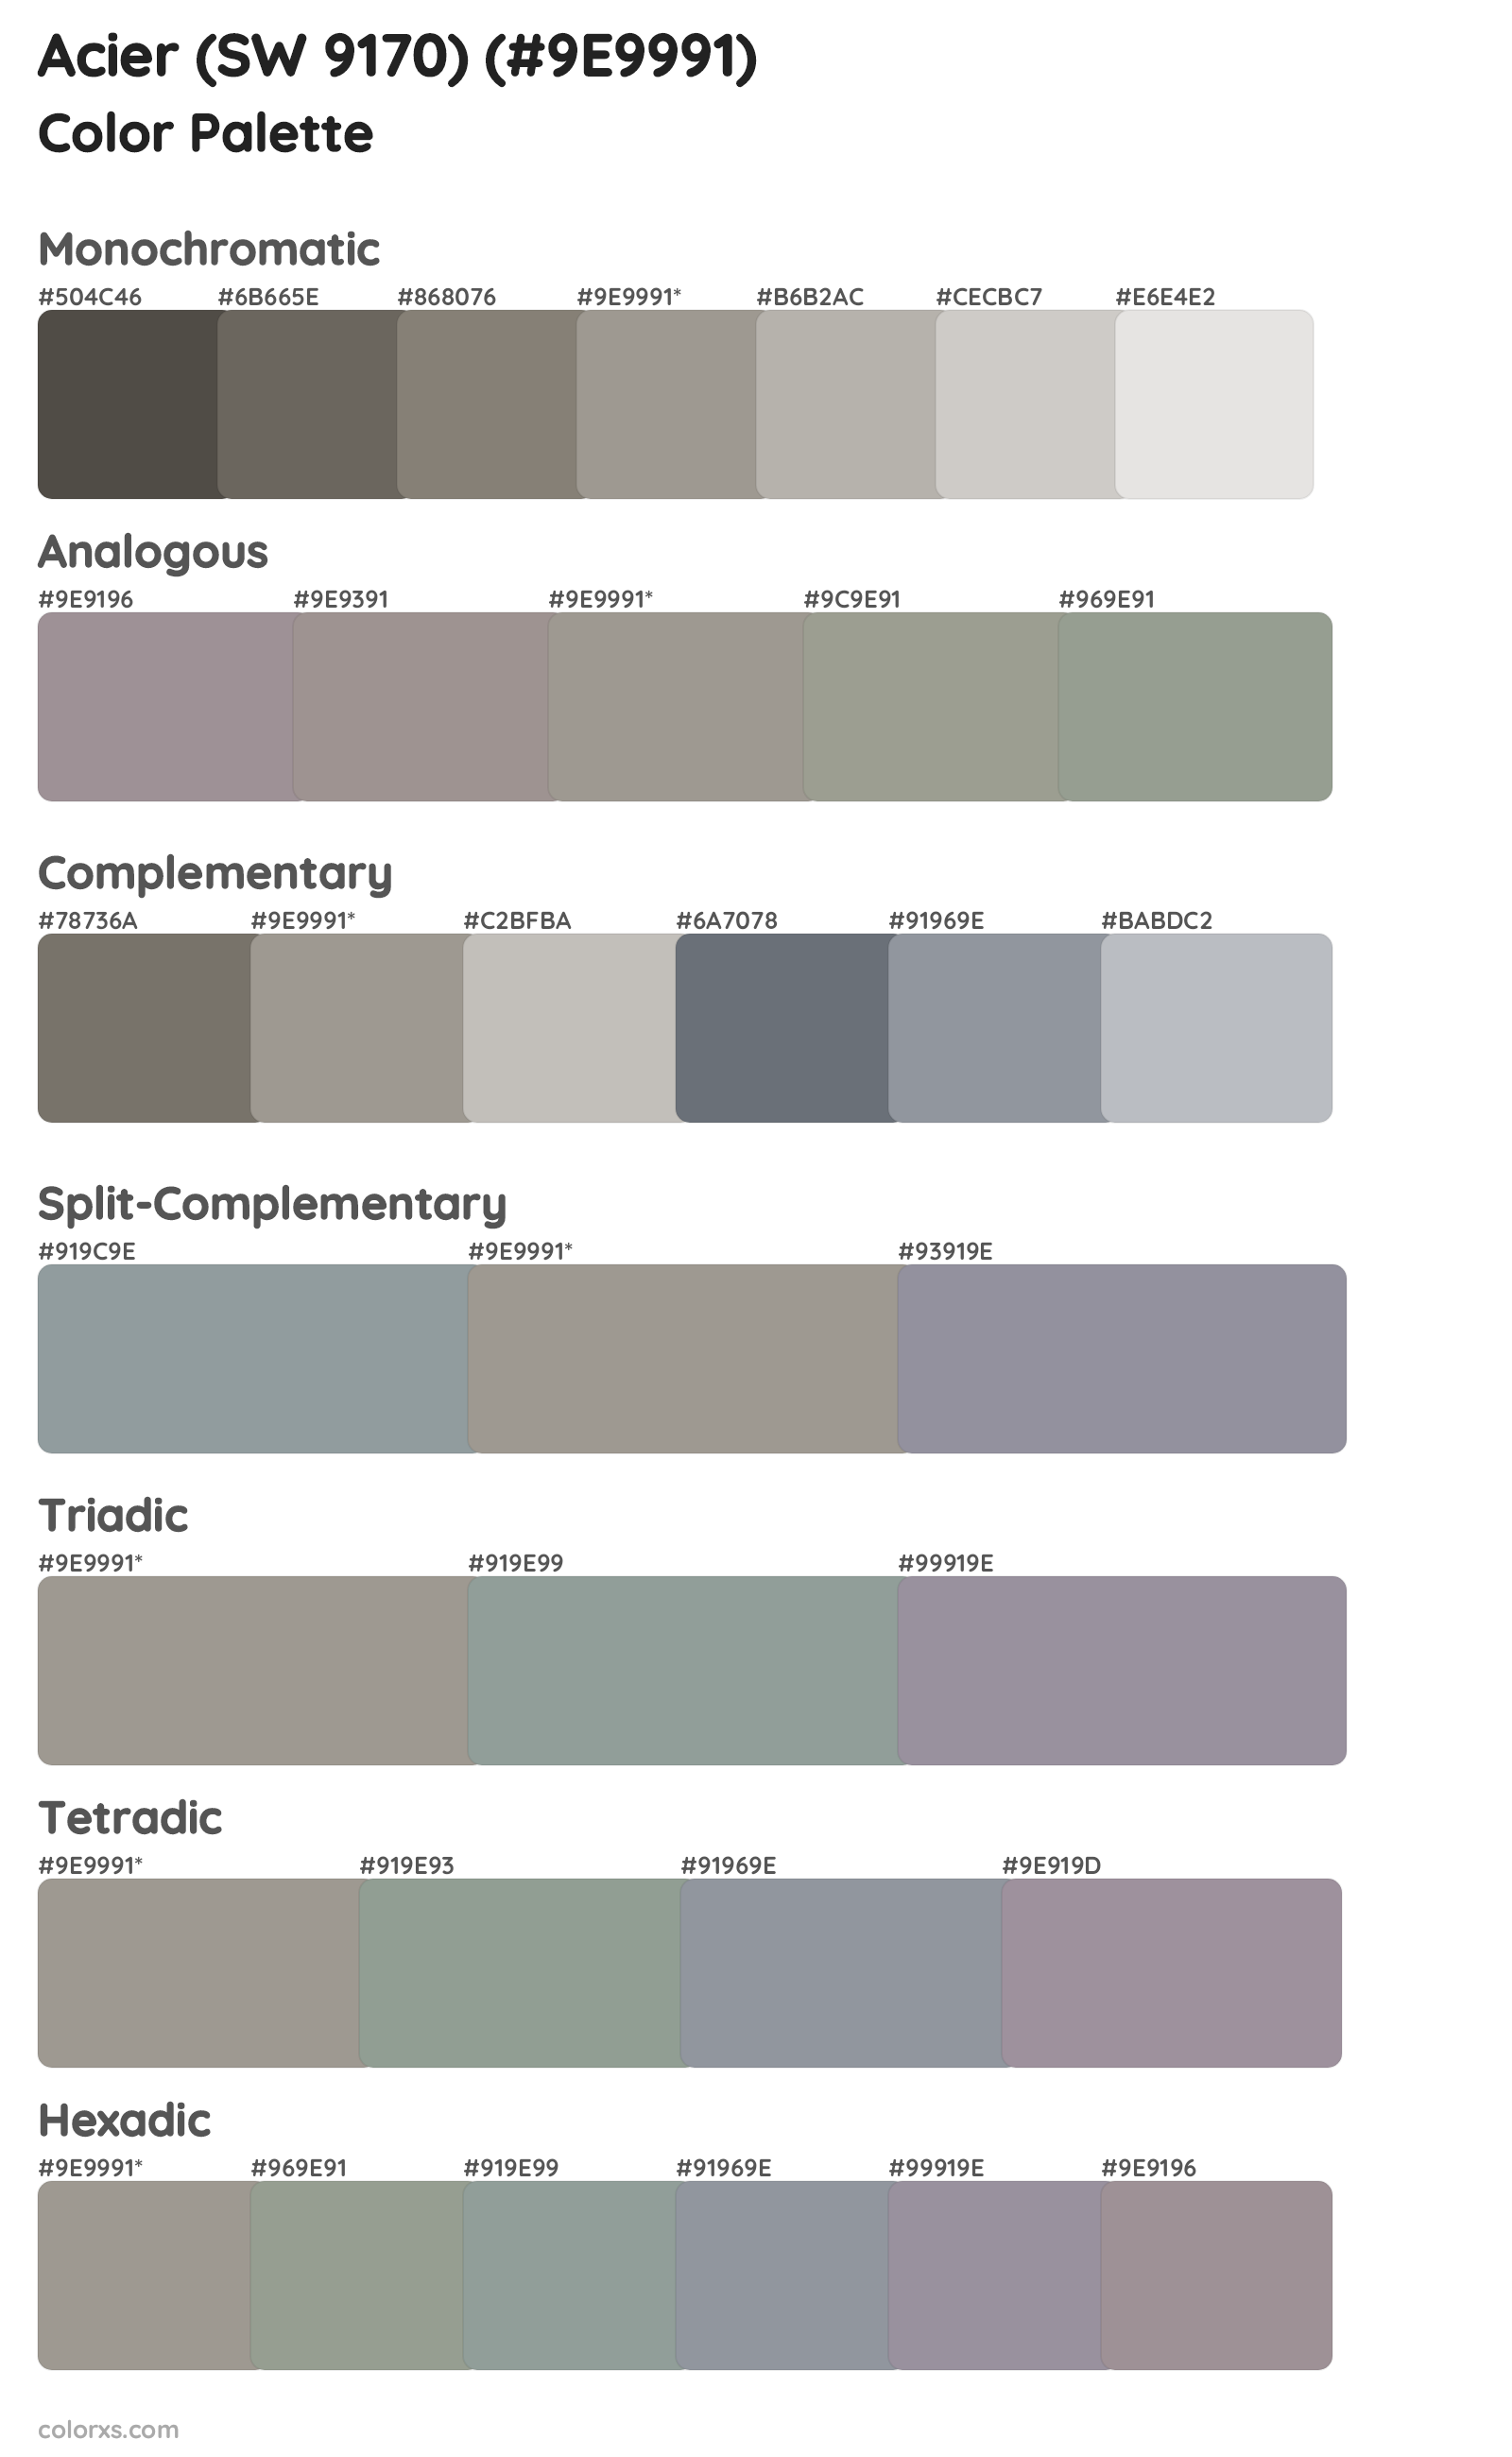 Acier (SW 9170) Color Scheme Palettes